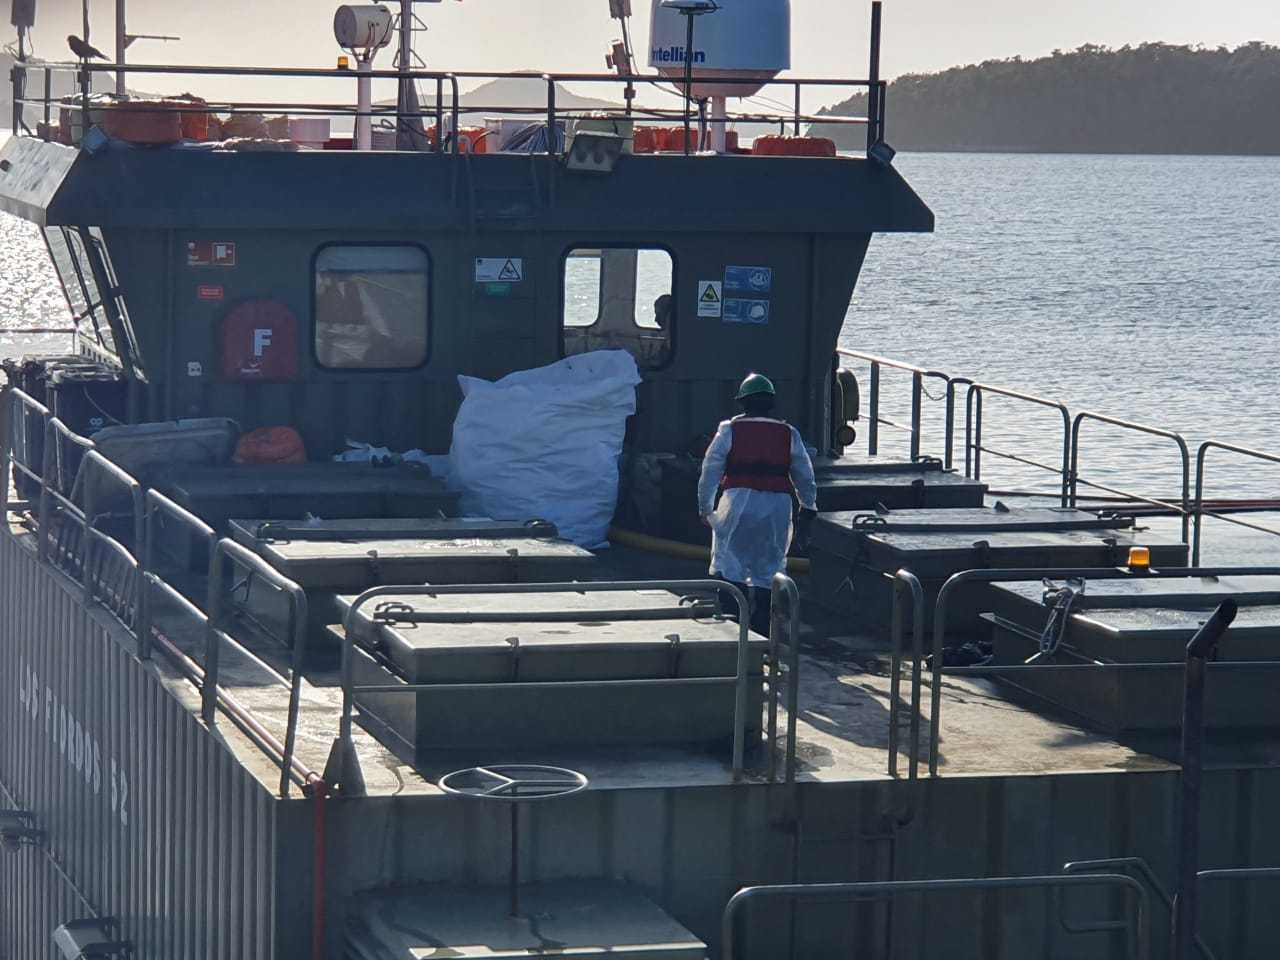 Capitán de barco salmonicultor: «Trabajamos con todos los protocolos de seguridad»